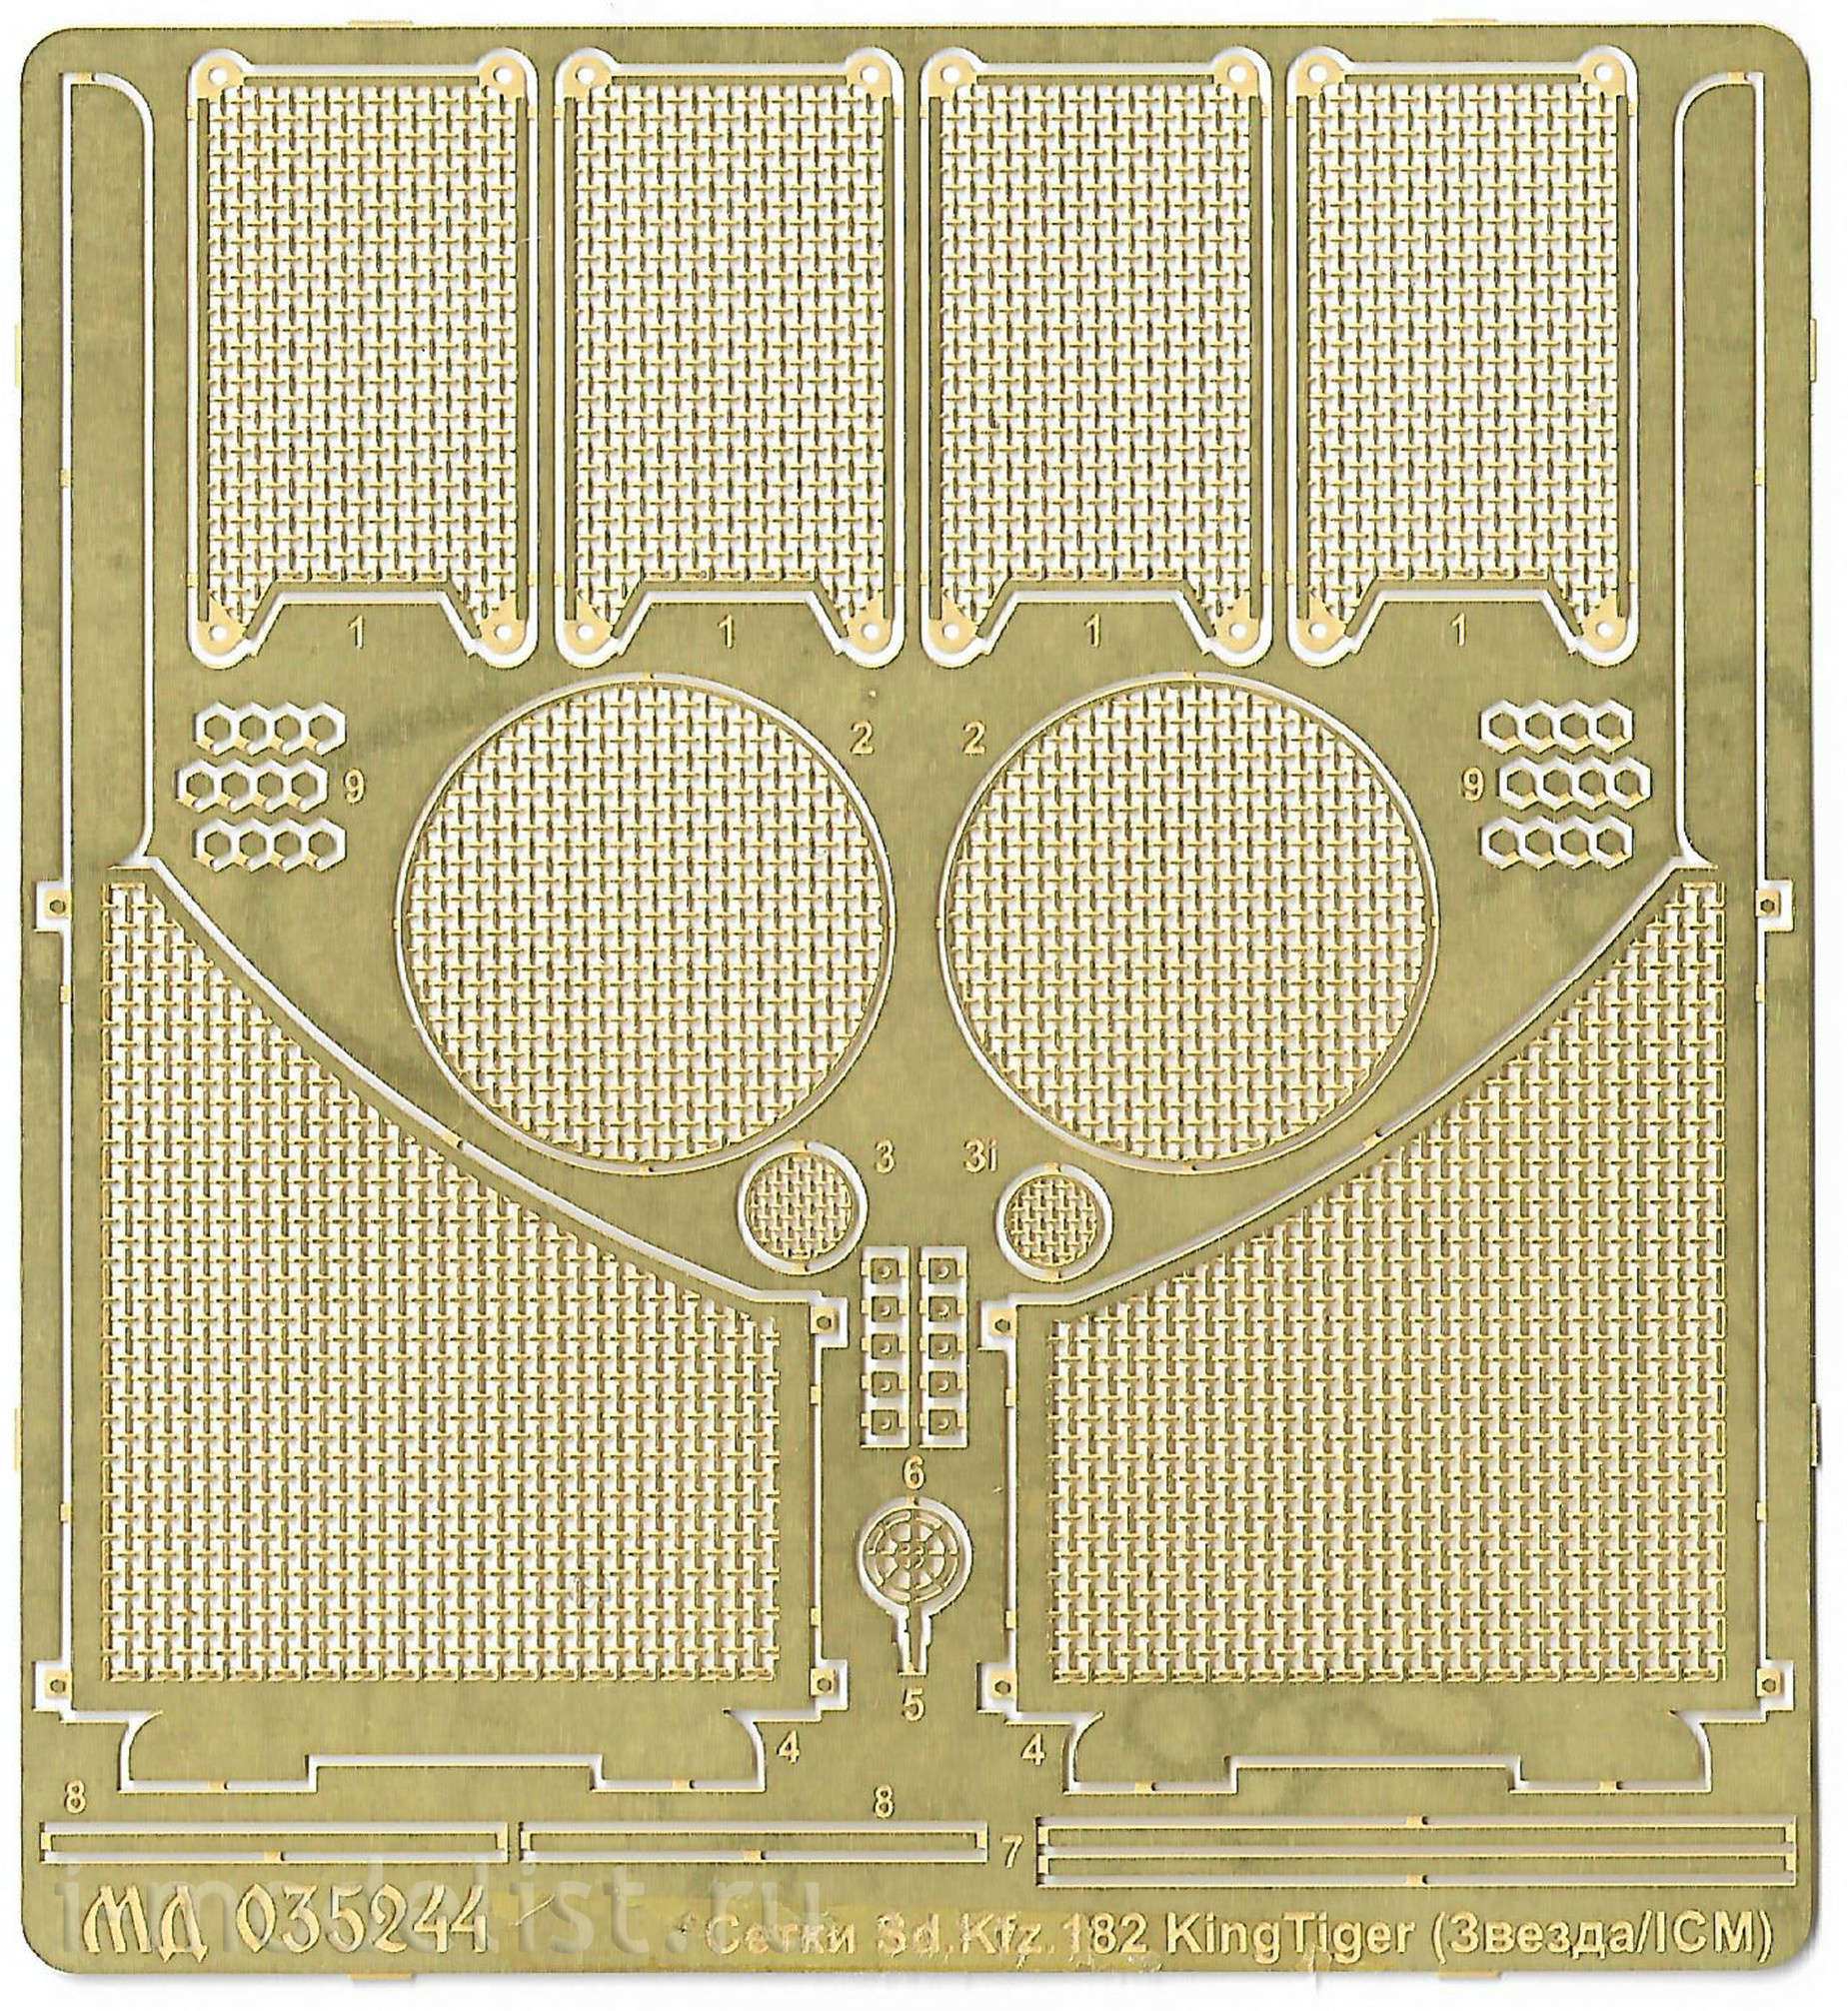 035314 Microdesign 1/35 SD.KFZ.182 king TIGER (Zvezda/ICM)